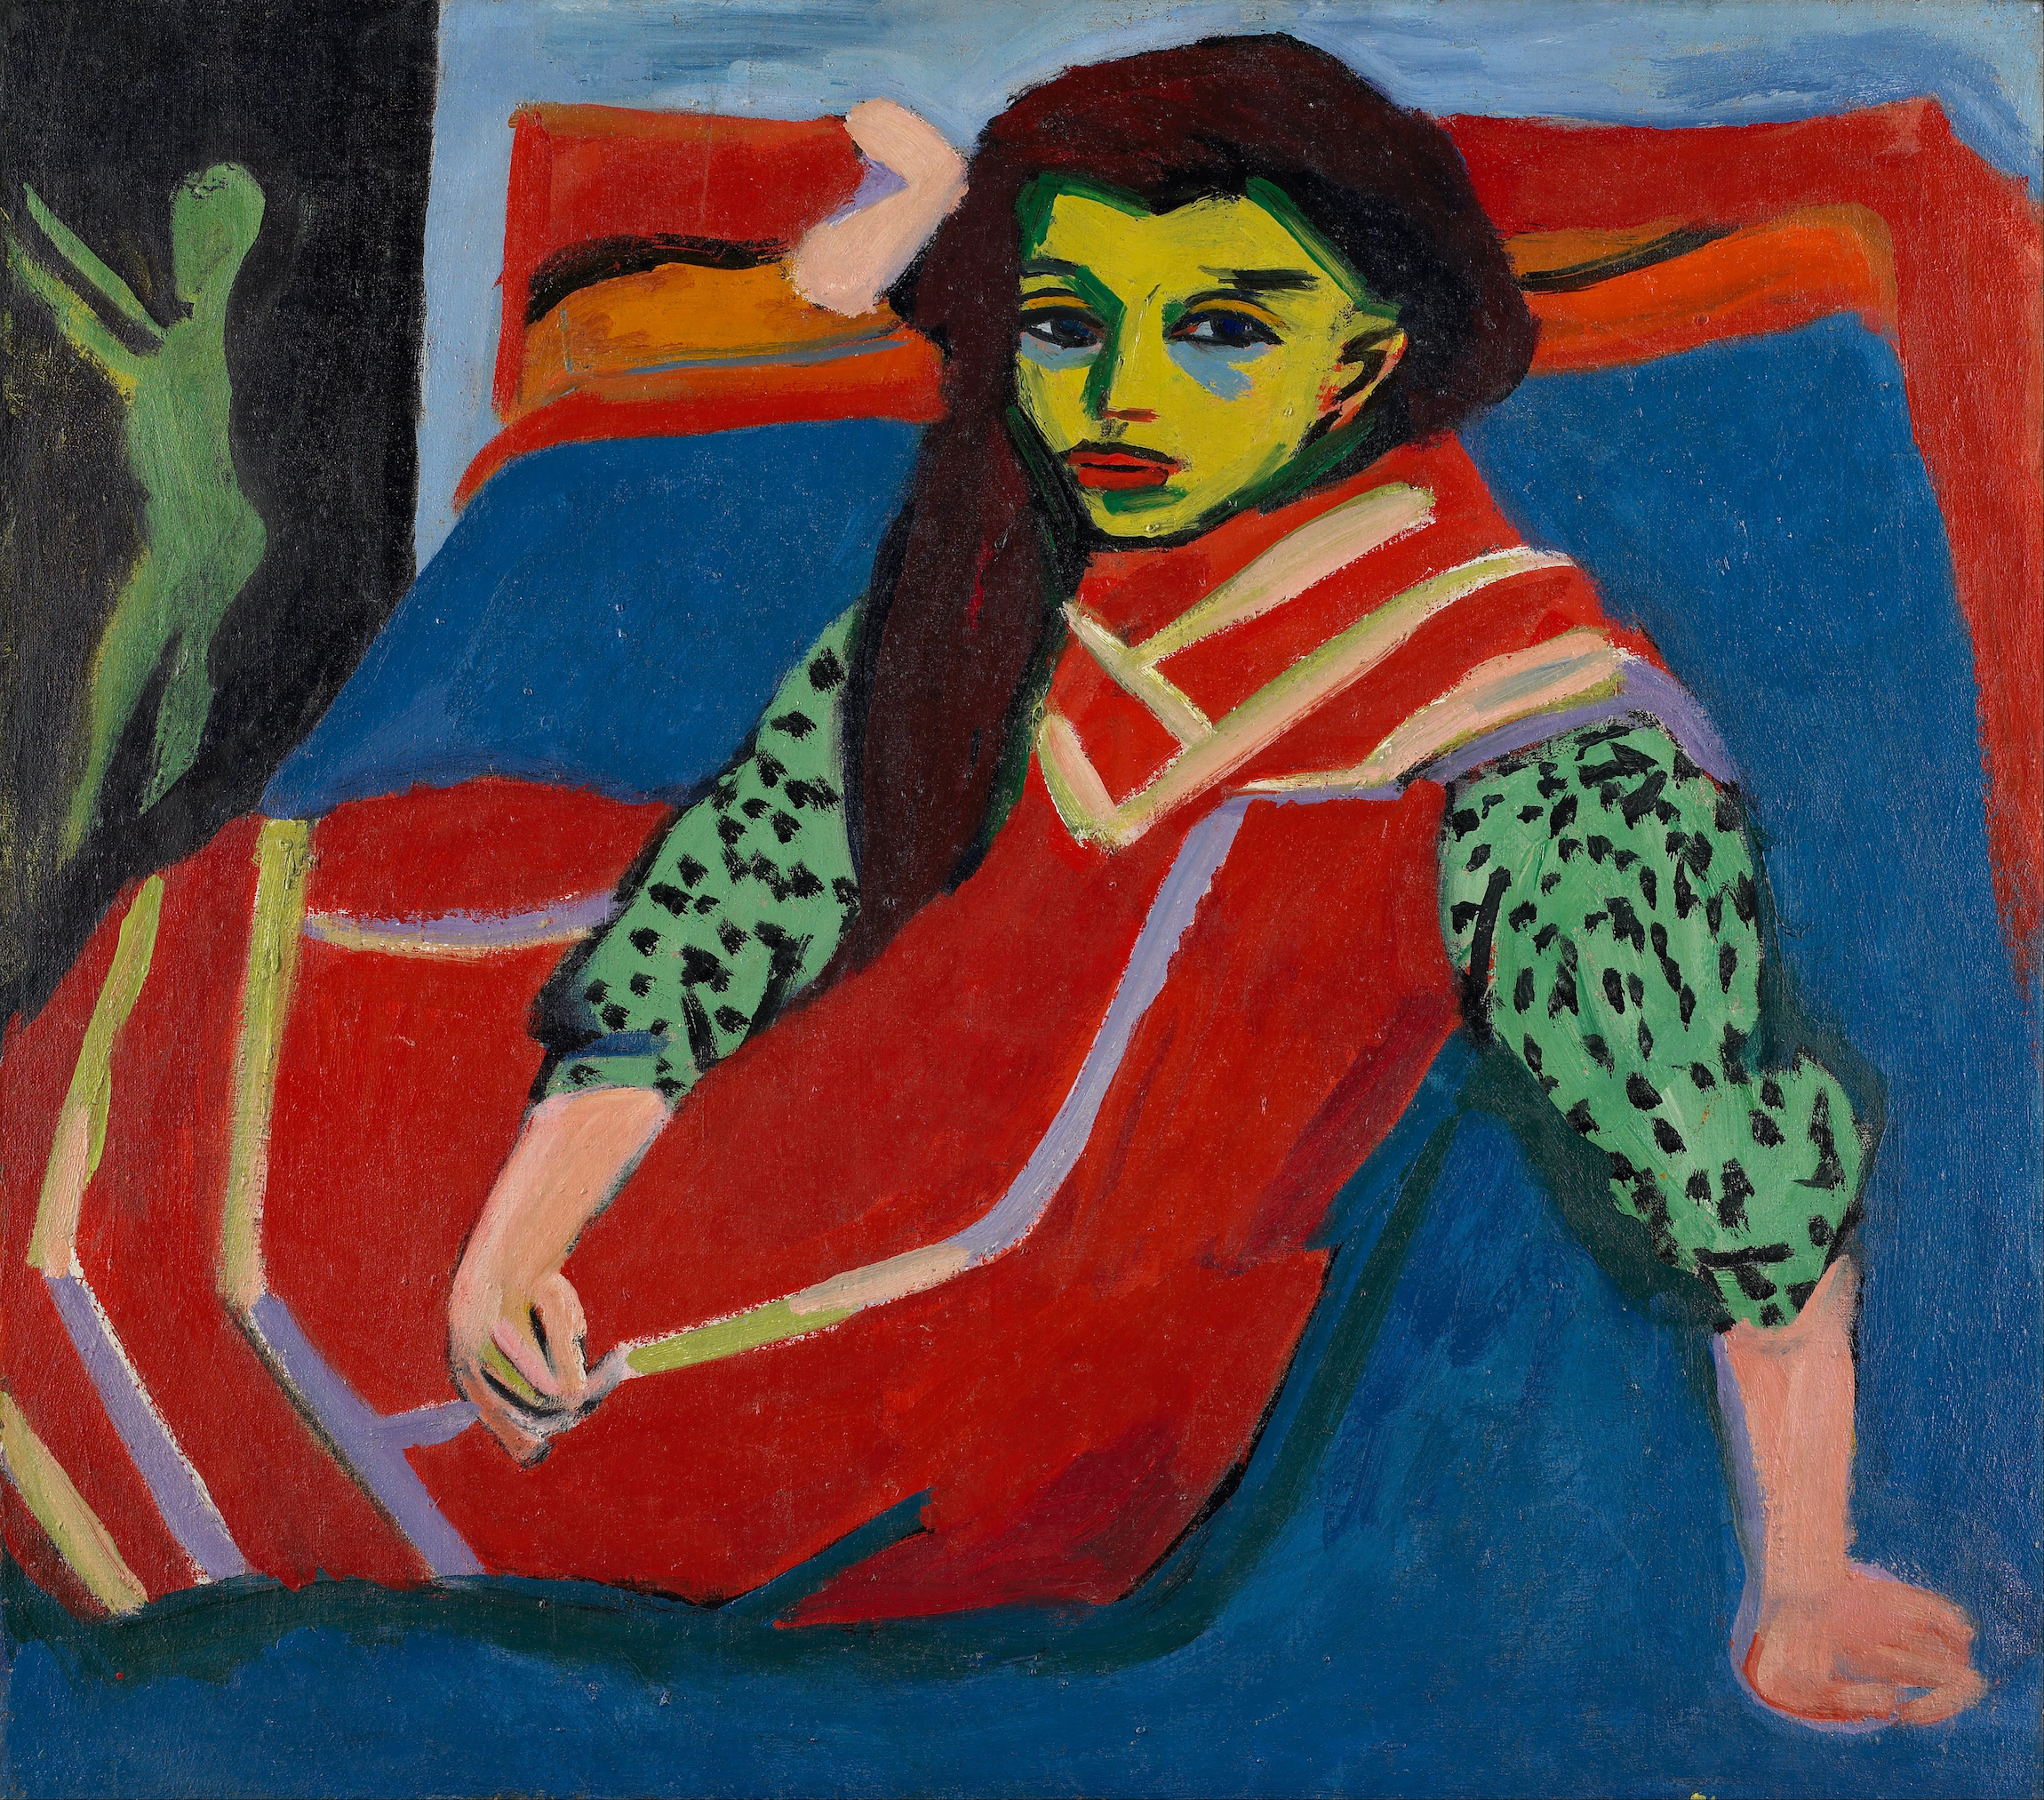 坐著的女孩(弗蘭茲·費爾曼) by Ernst Ludwig Kirchner - 1910 - 75.5 x h99.5 cm 